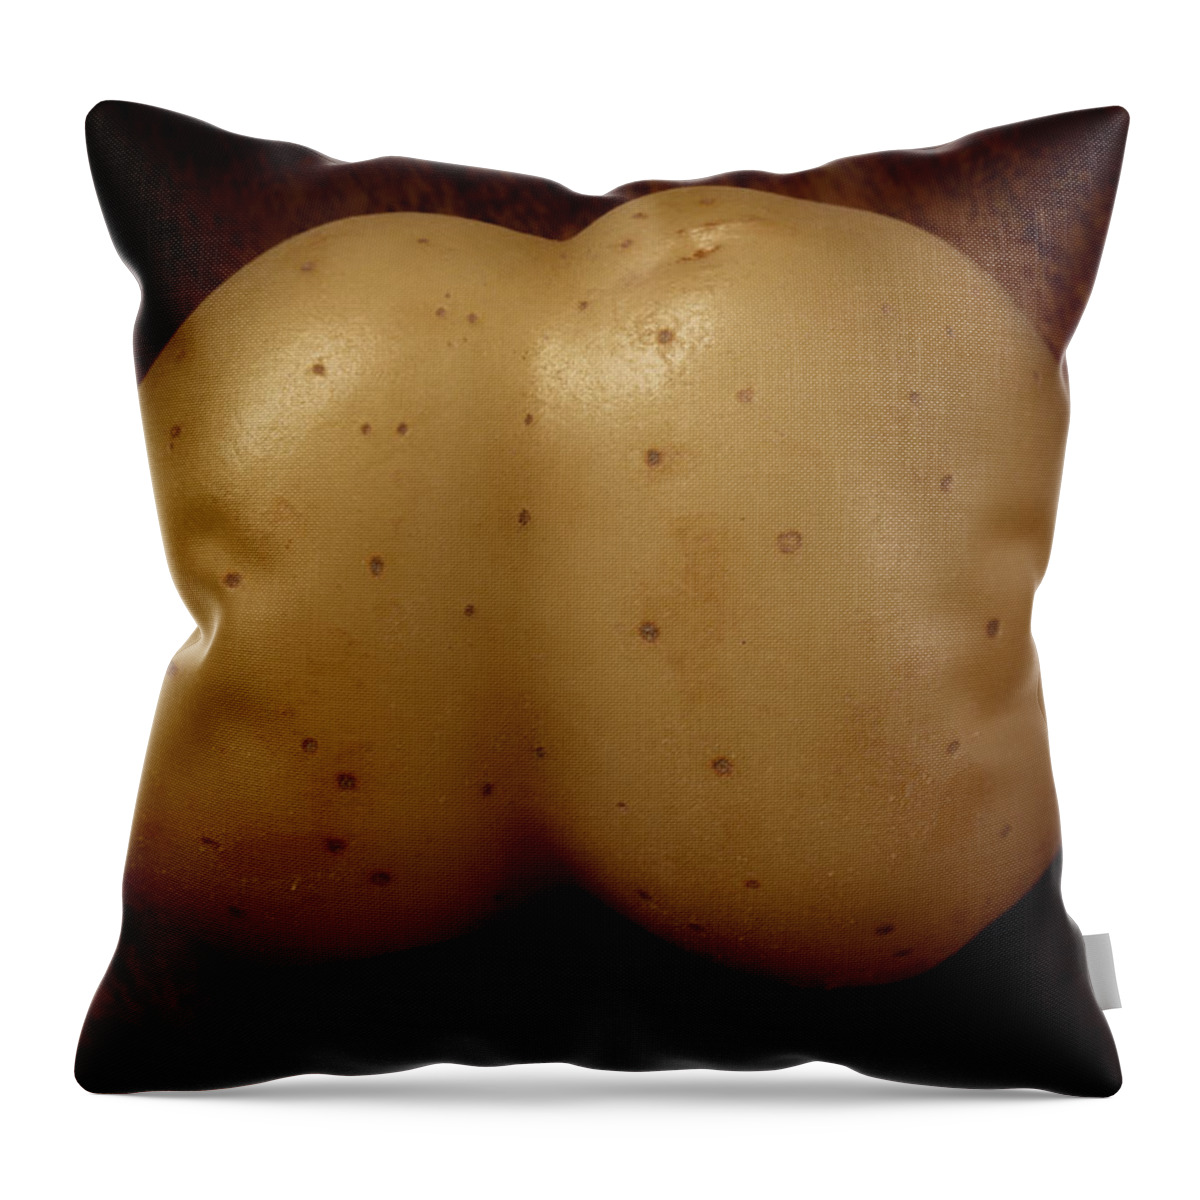 Potato Throw Pillow featuring the photograph Rude Potato #4 by David Smith